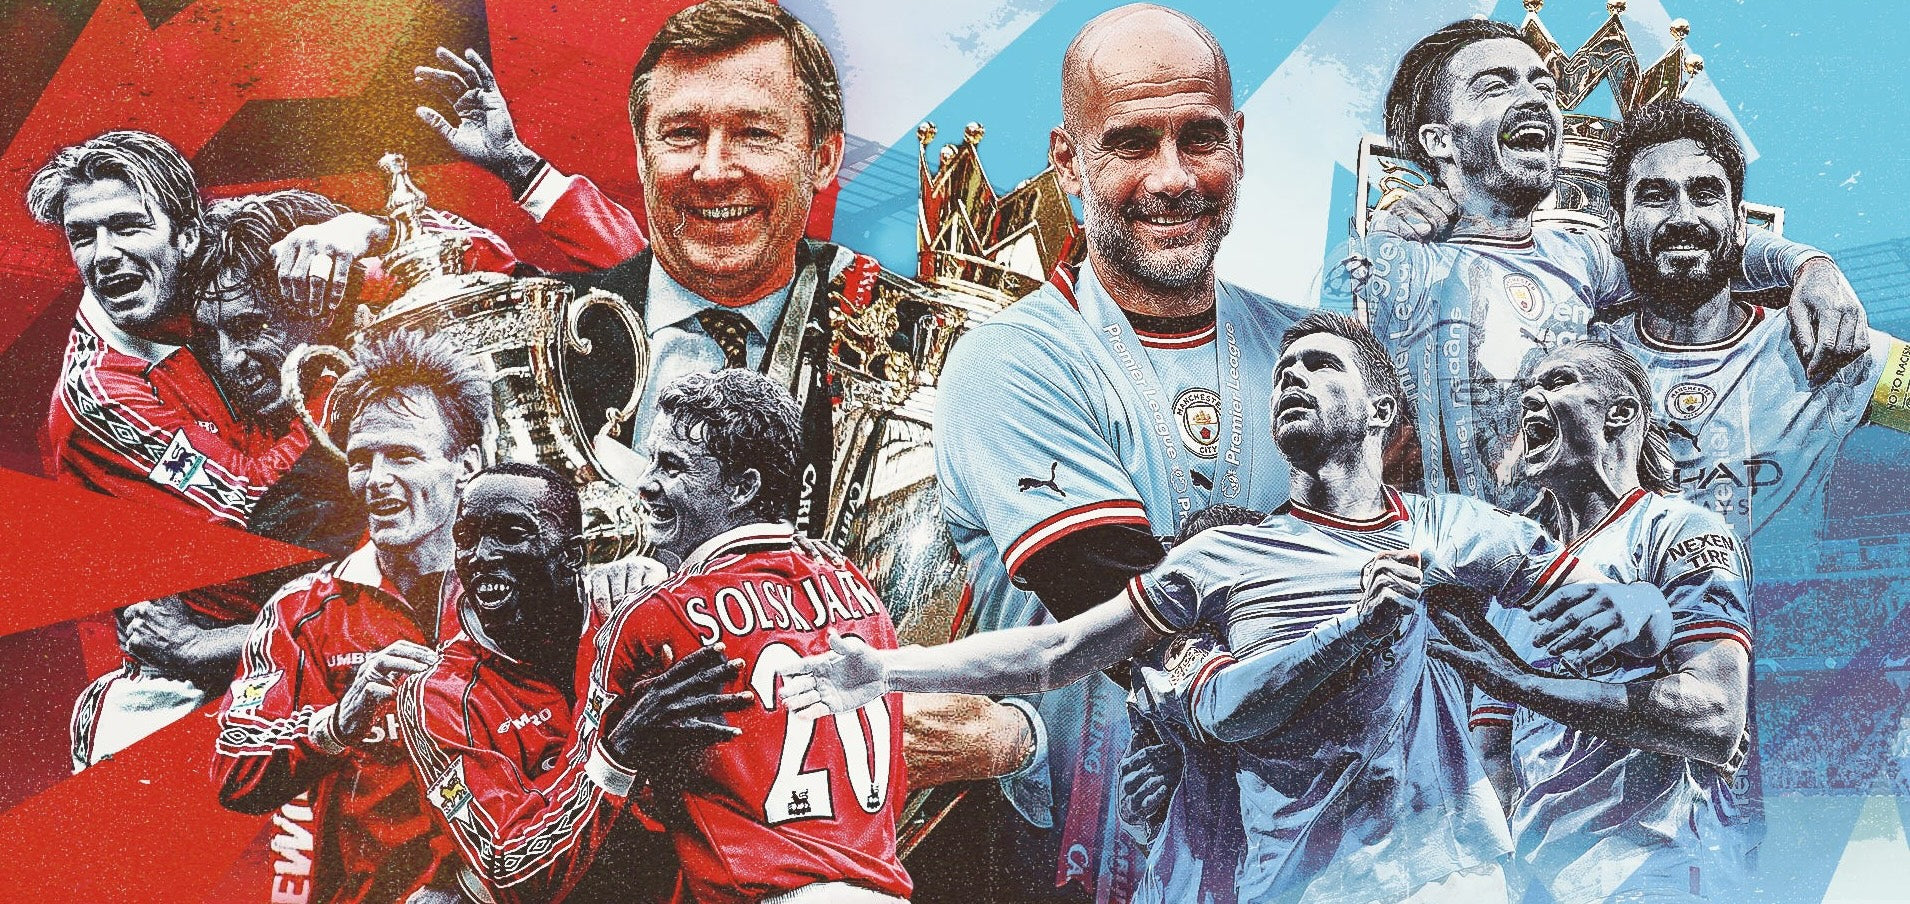 O pulso da paixão: A Rivalidade Manchester no Futebol